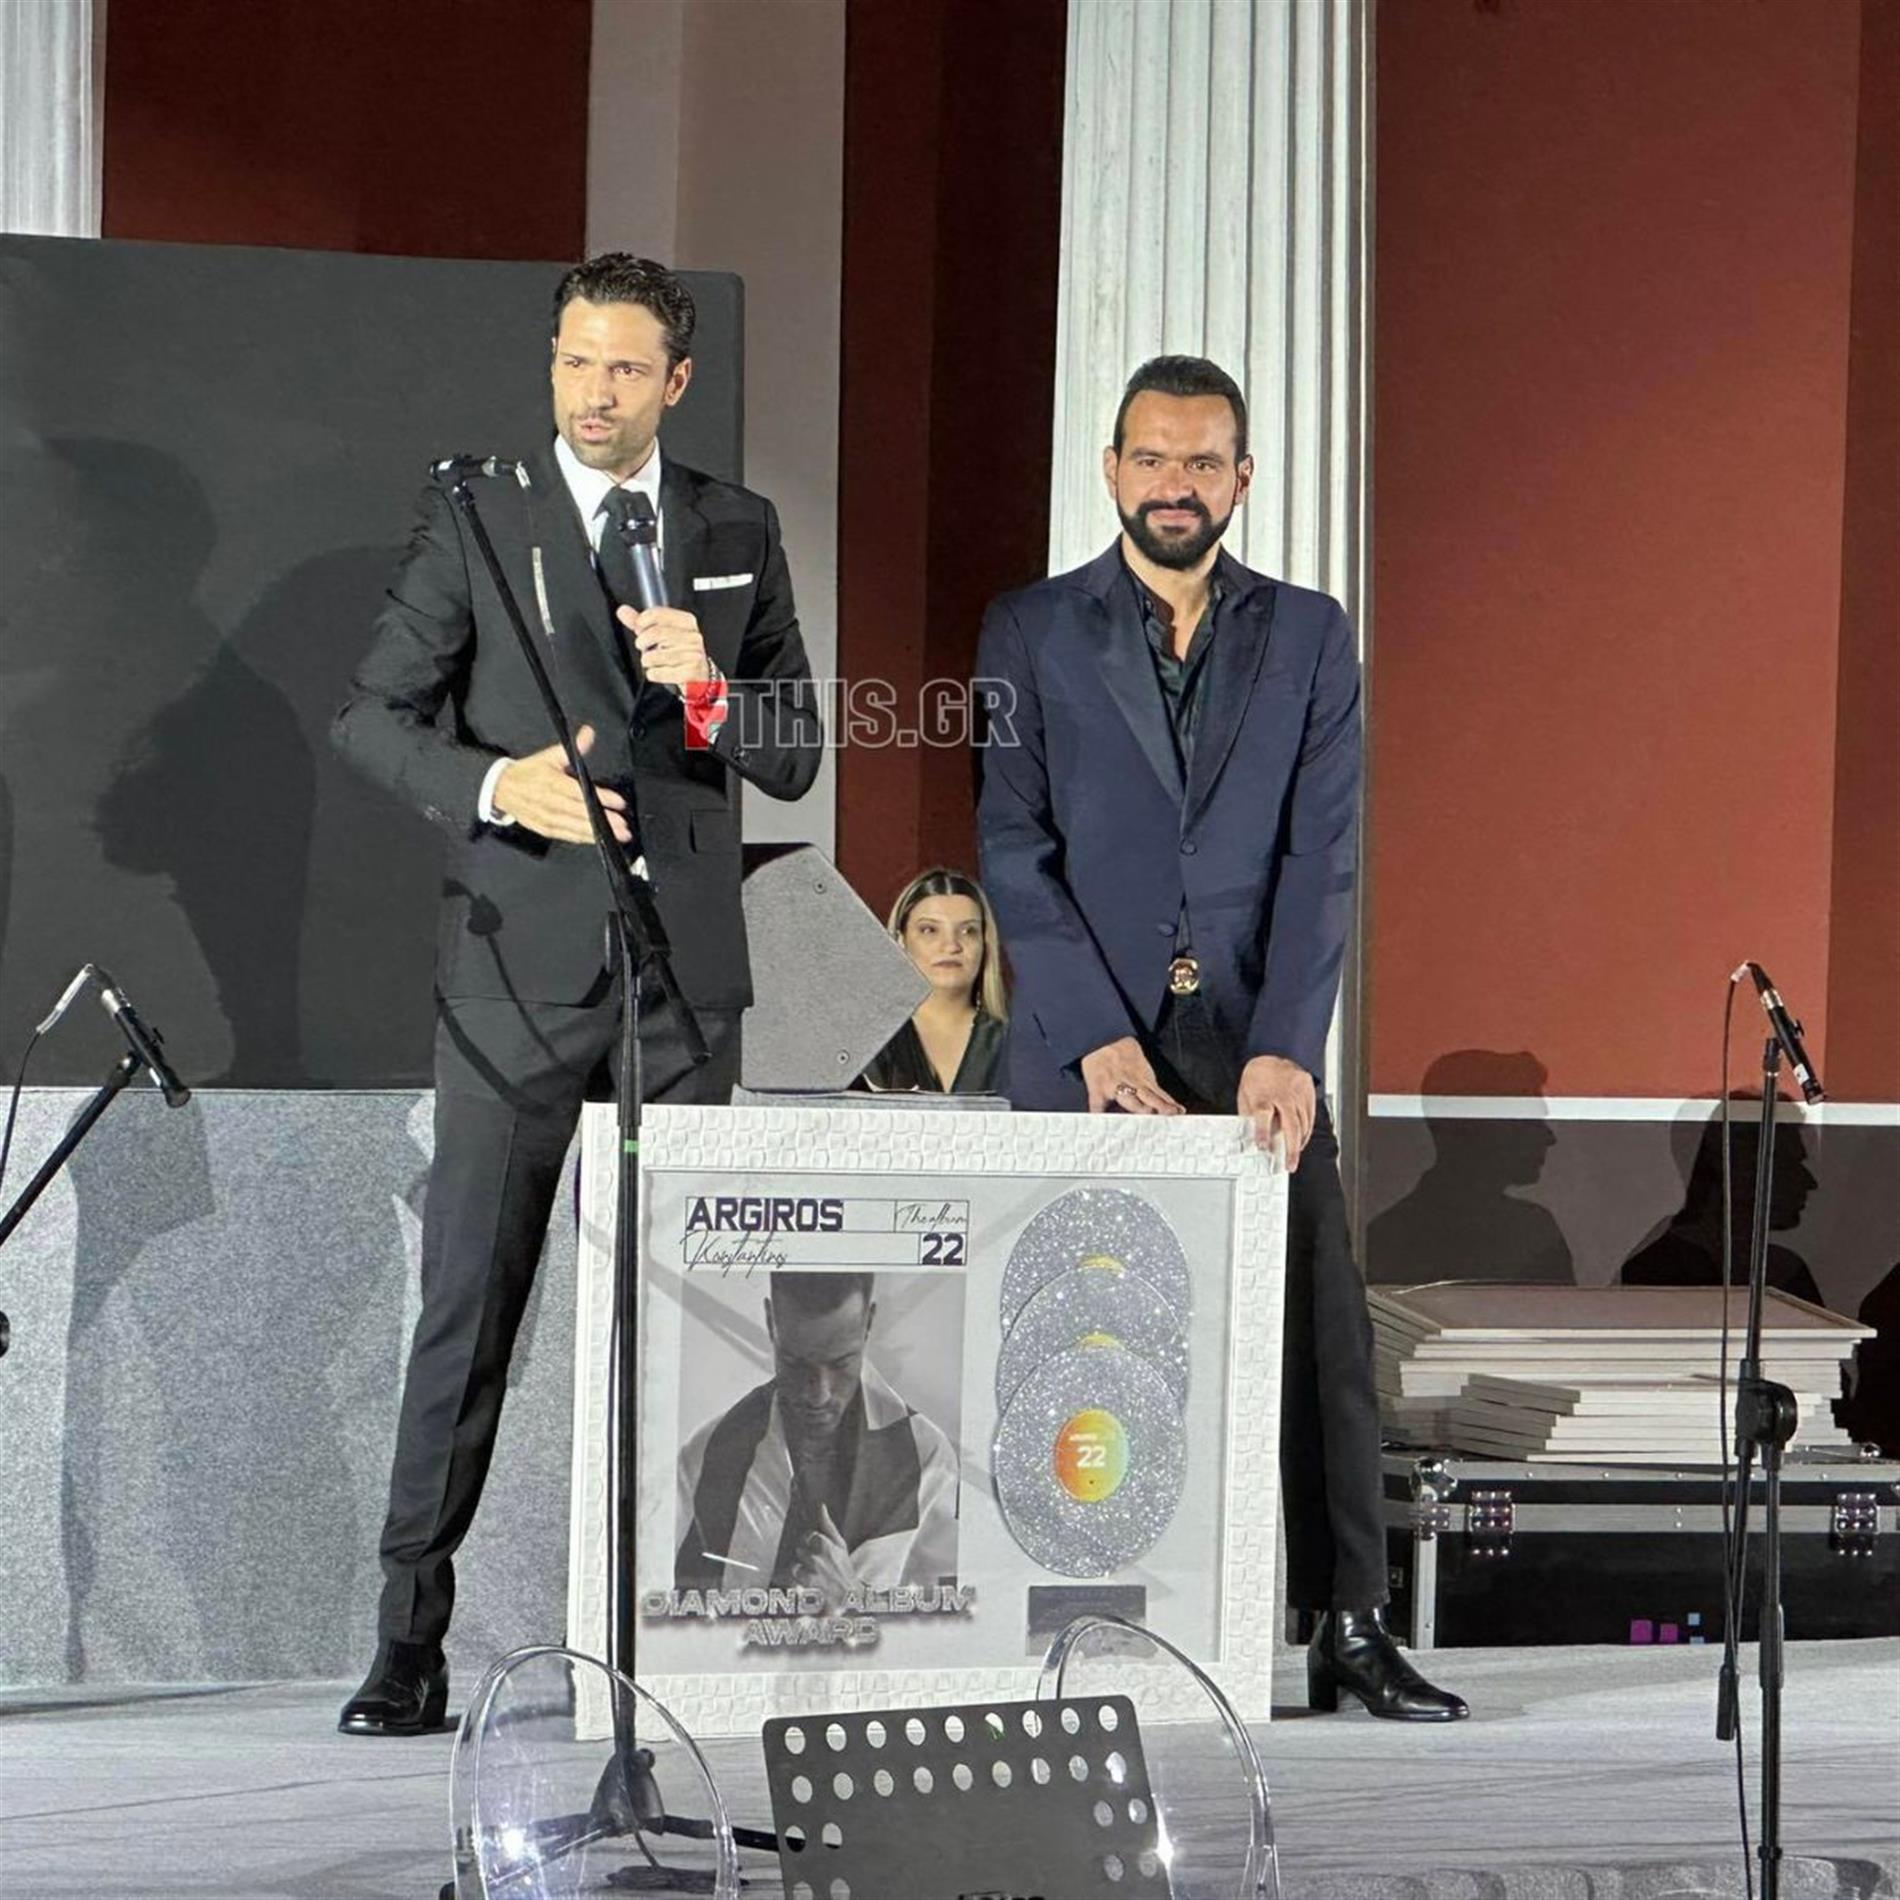 Κωνσταντίνος Αργυρός: Στο πλευρό του η Αλεξάνδρα Νίκα στην απονομή του διαμαντένιου του άλμπουμ - Αποκλειστικές Φωτογραφίες